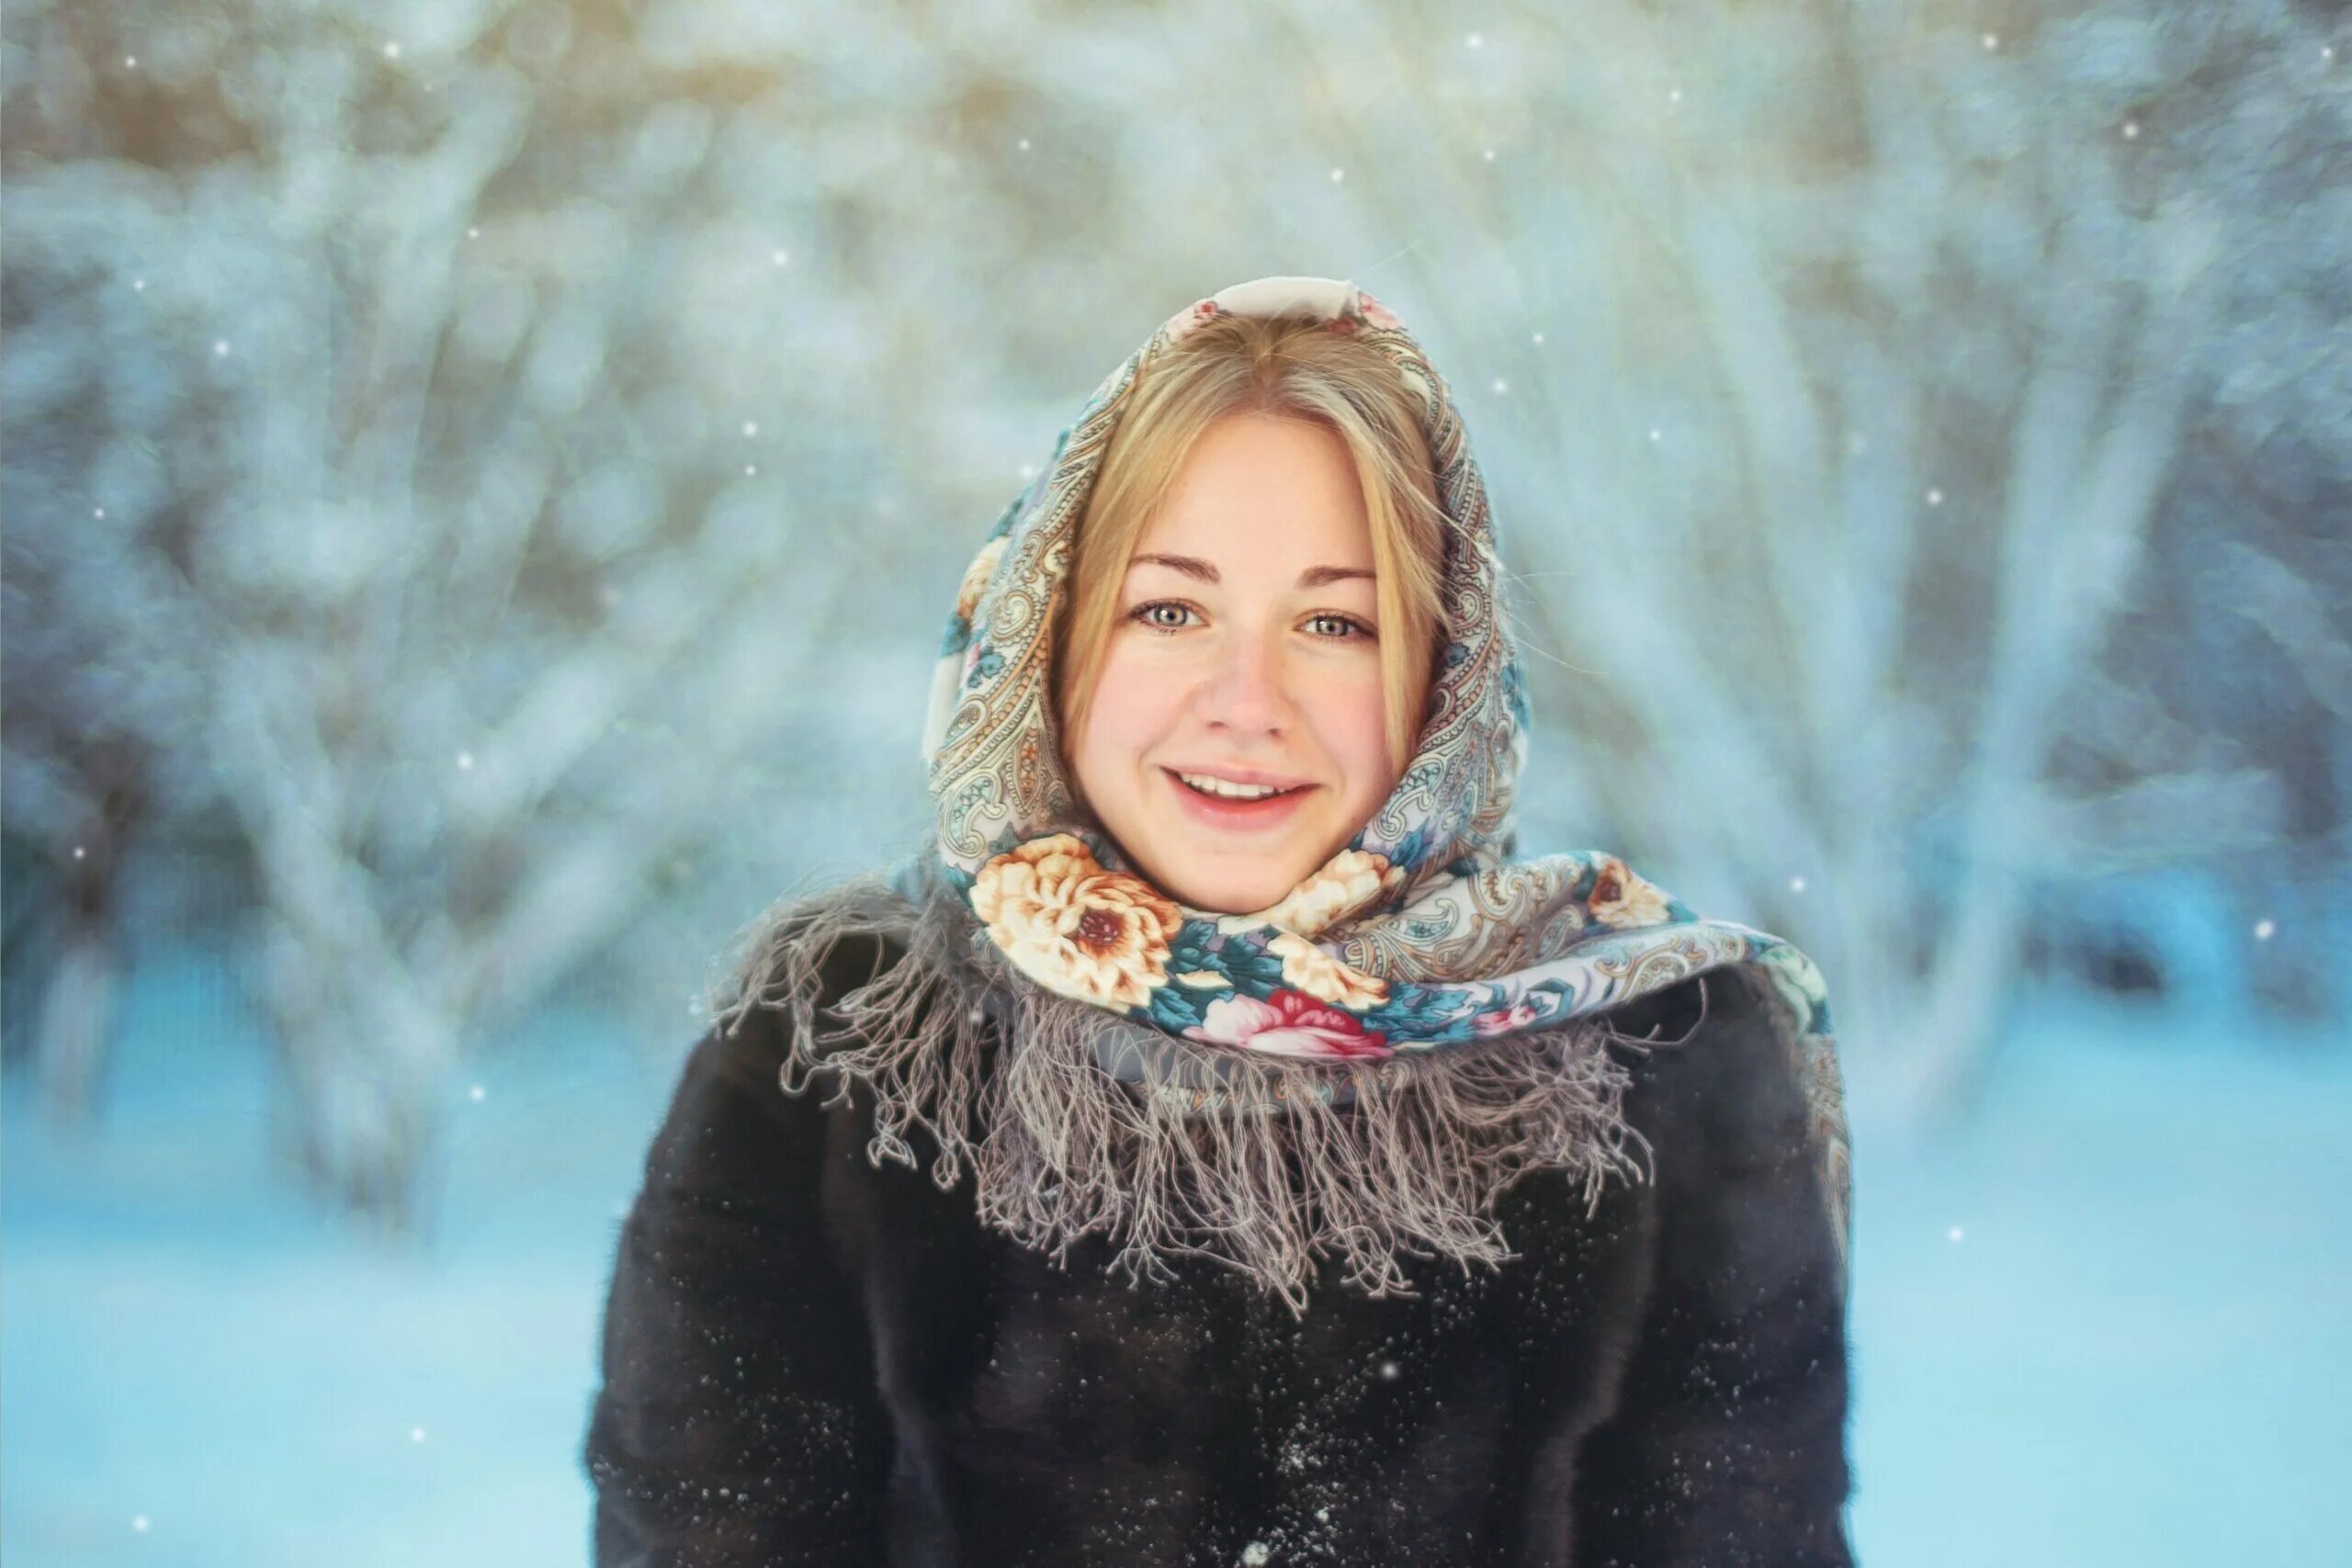 Ютуб русские женщины. Женщина в платке зима. Женщина в платке. Девушка в платке зимой. Русская женщина в платке.